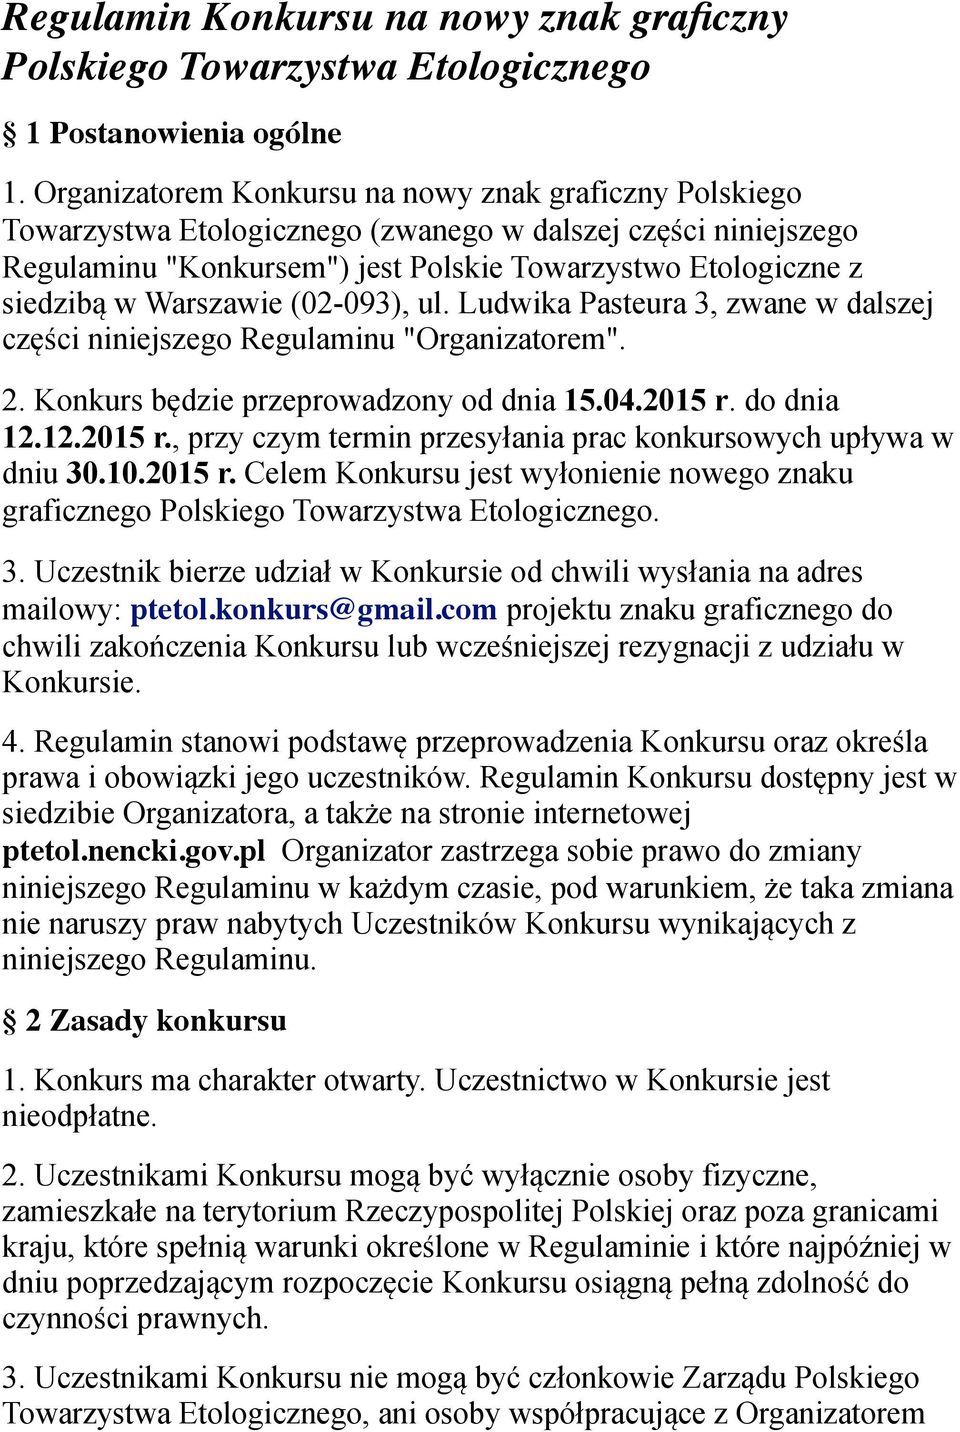 Warszawie (02-093), ul. Ludwika Pasteura 3, zwane w dalszej części niniejszego Regulaminu "Organizatorem". 2. Konkurs będzie przeprowadzony od dnia 15.04.2015 r.